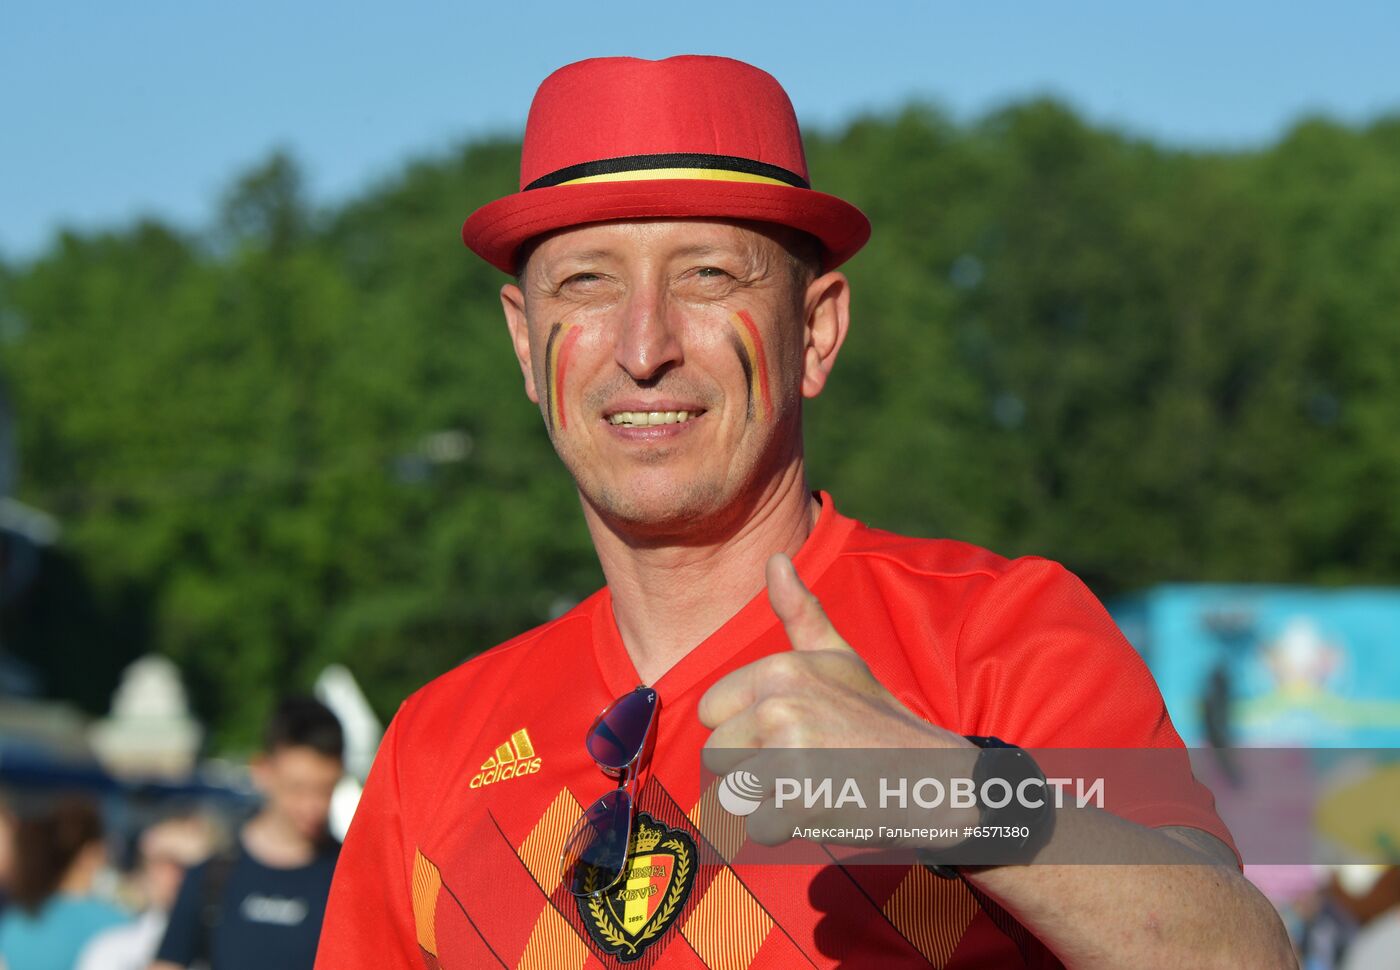 Просмотр матча ЧЕ-2020 по футболу между сборными Бельгии и России